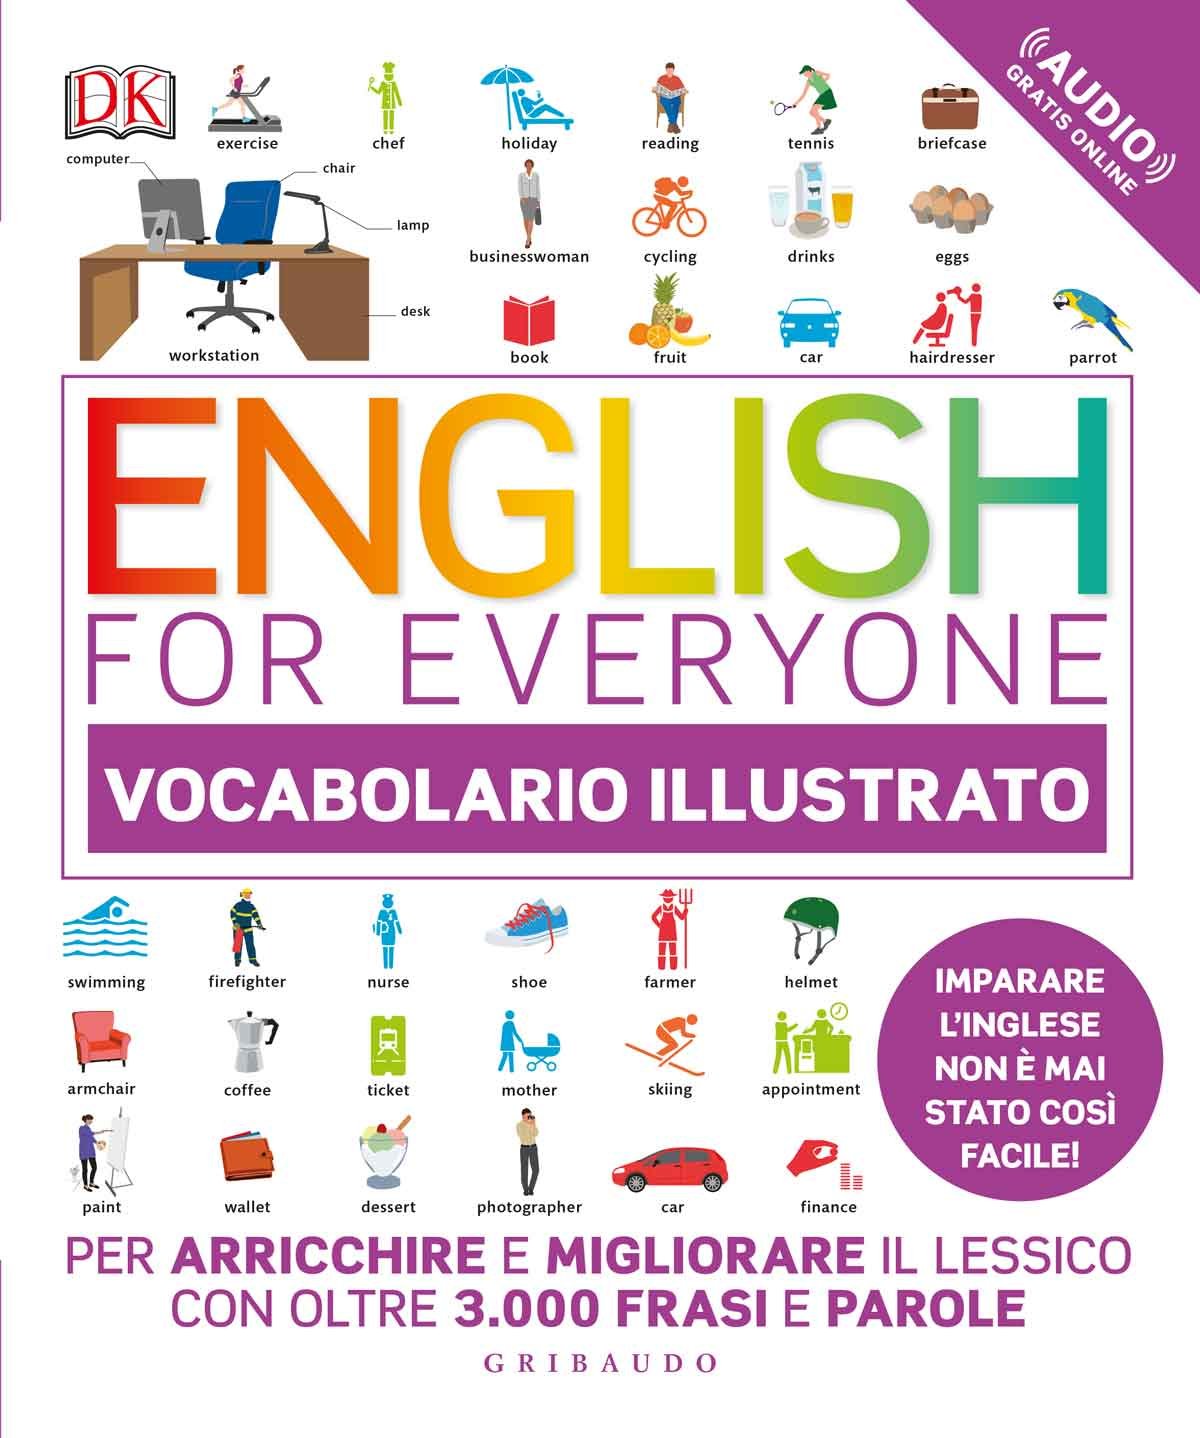 English for everyone - Vocabolario illustrato